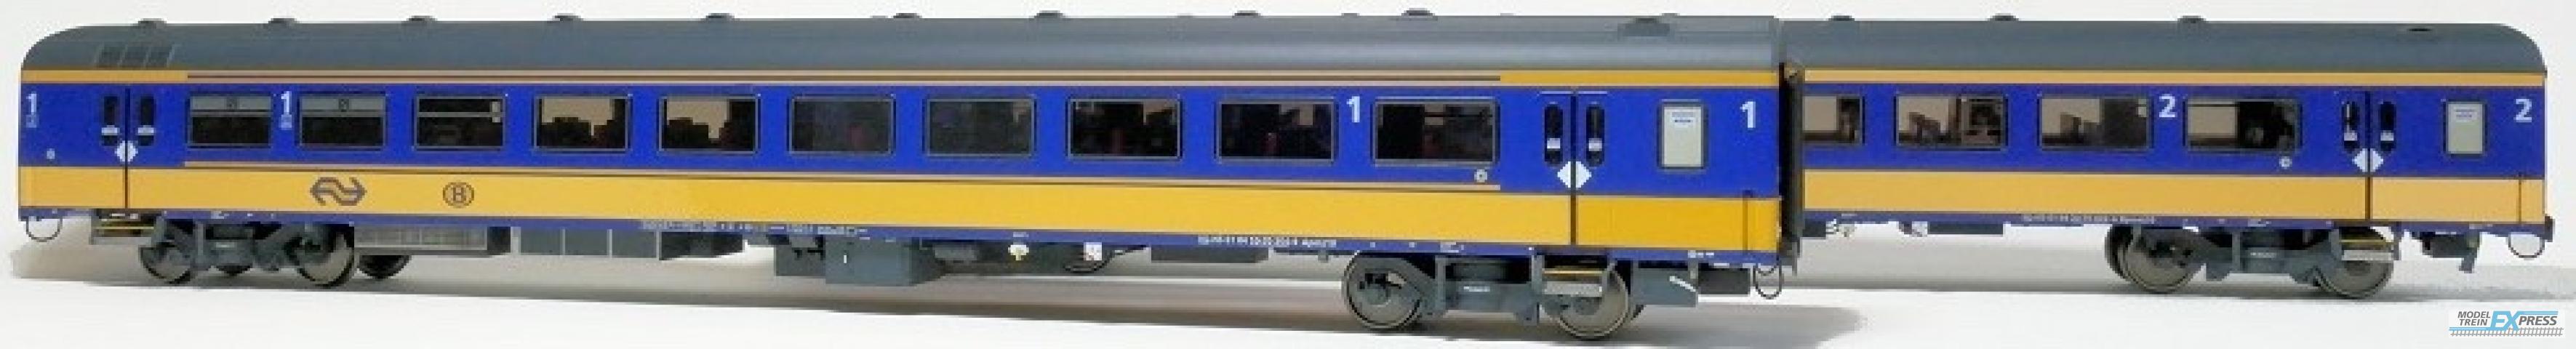 Exact-train 11020 2er-Set NS ICRm Garnitur 1 (Amsterdam - Brussel) für die Hsl-Strecke eingesetzt Endwagen Bpmez10 und Reisezugwagen Apmz10 ( Neue Farbe Gelb / Blau), Ep. VI